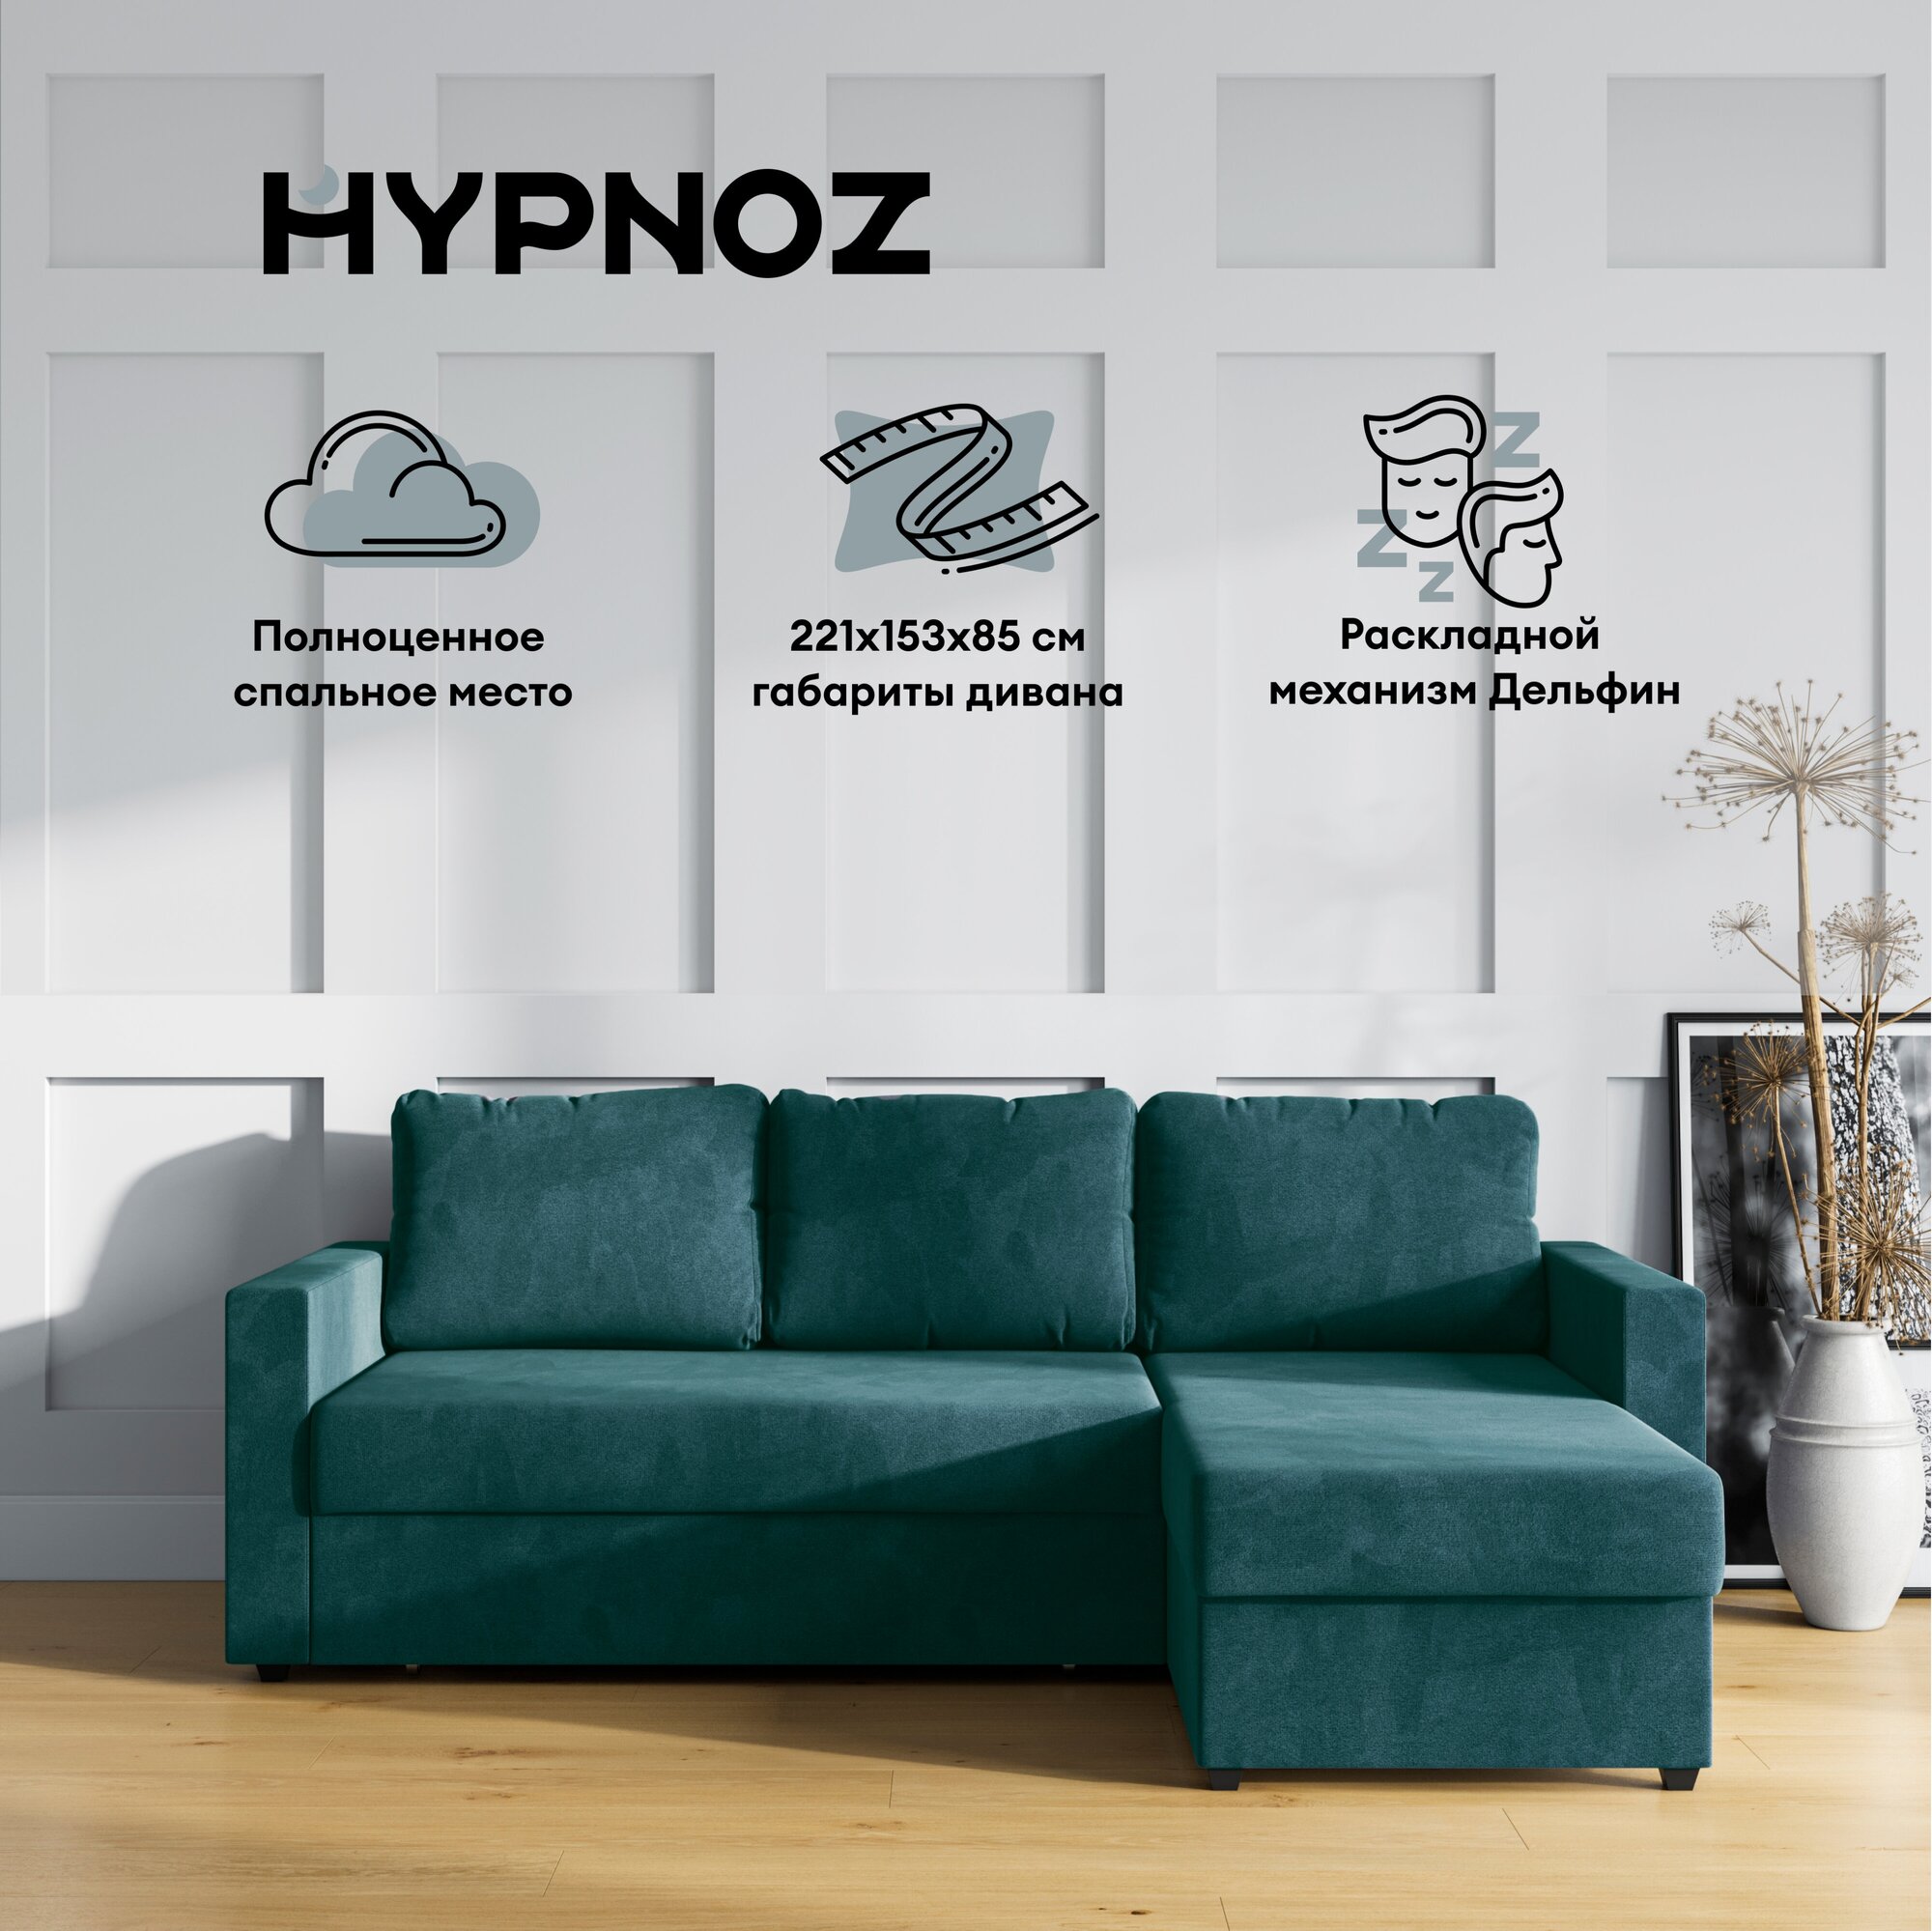 Угловой диван-кровать, HYPNOZ Denver, механизм Дельфин, Зелёный, 221х153х85 см - фотография № 1